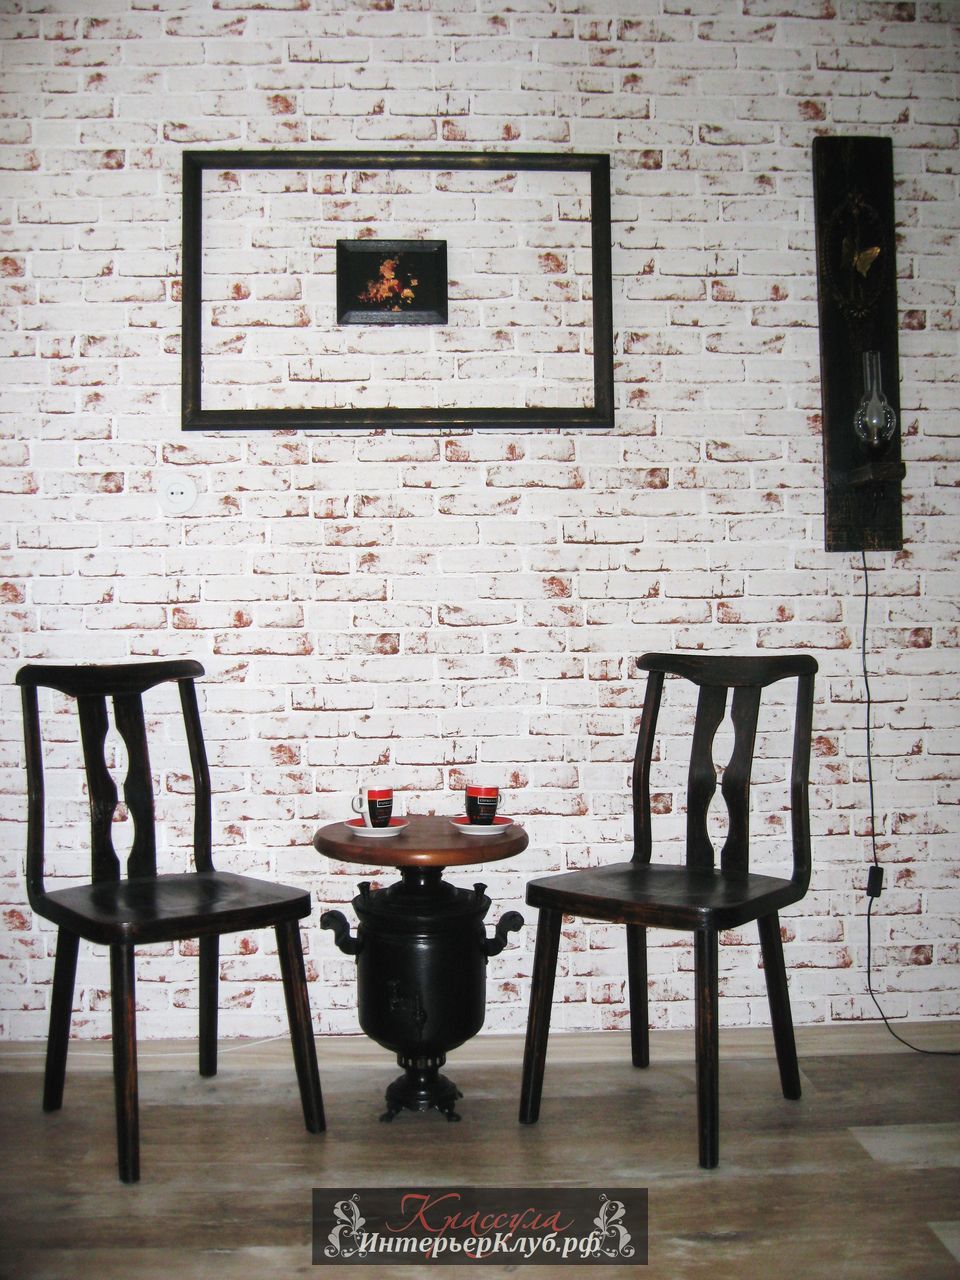 41 Чайный - кофейный столик Самовар -  настоящий  угольный самовар 20 века, цвет черный